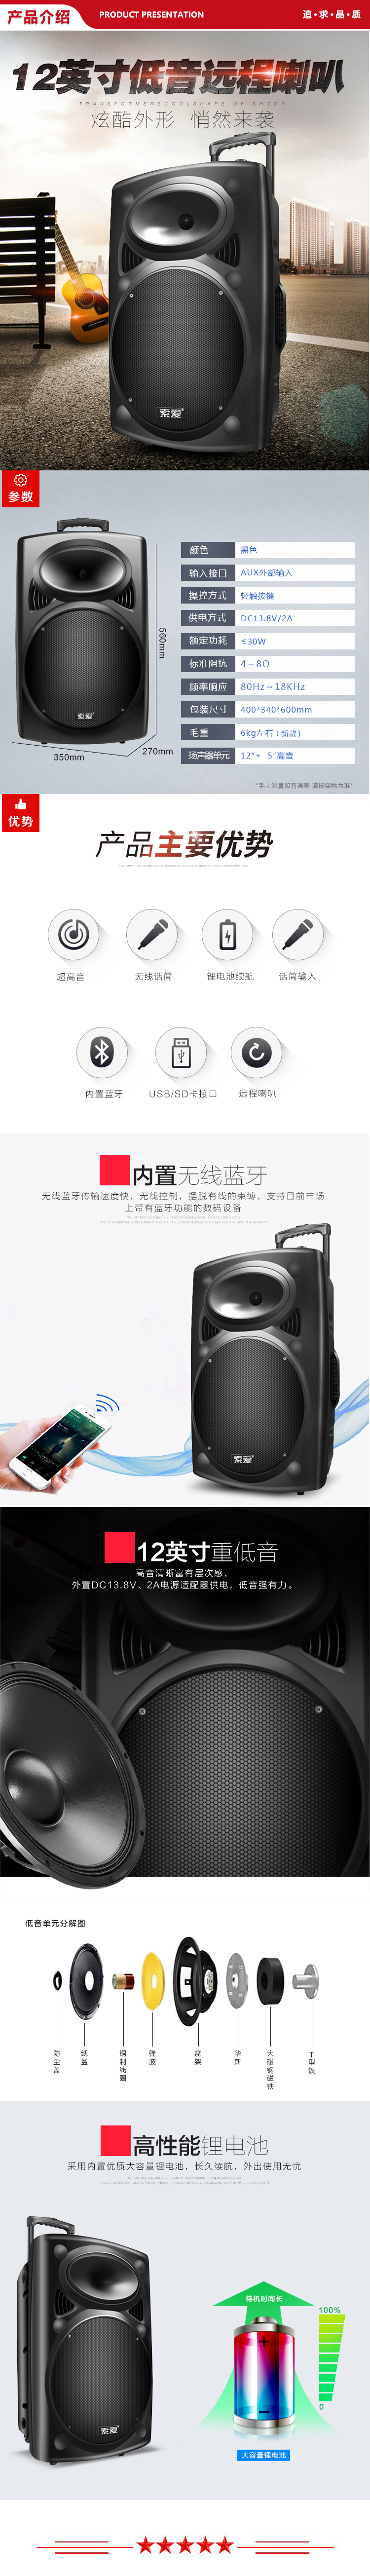 索爱 soaiy SA-X35 12英寸蓝牙拉杆音响 户外便携式音箱 低音炮 扩音器 双话筒+单耳麦 .jpg